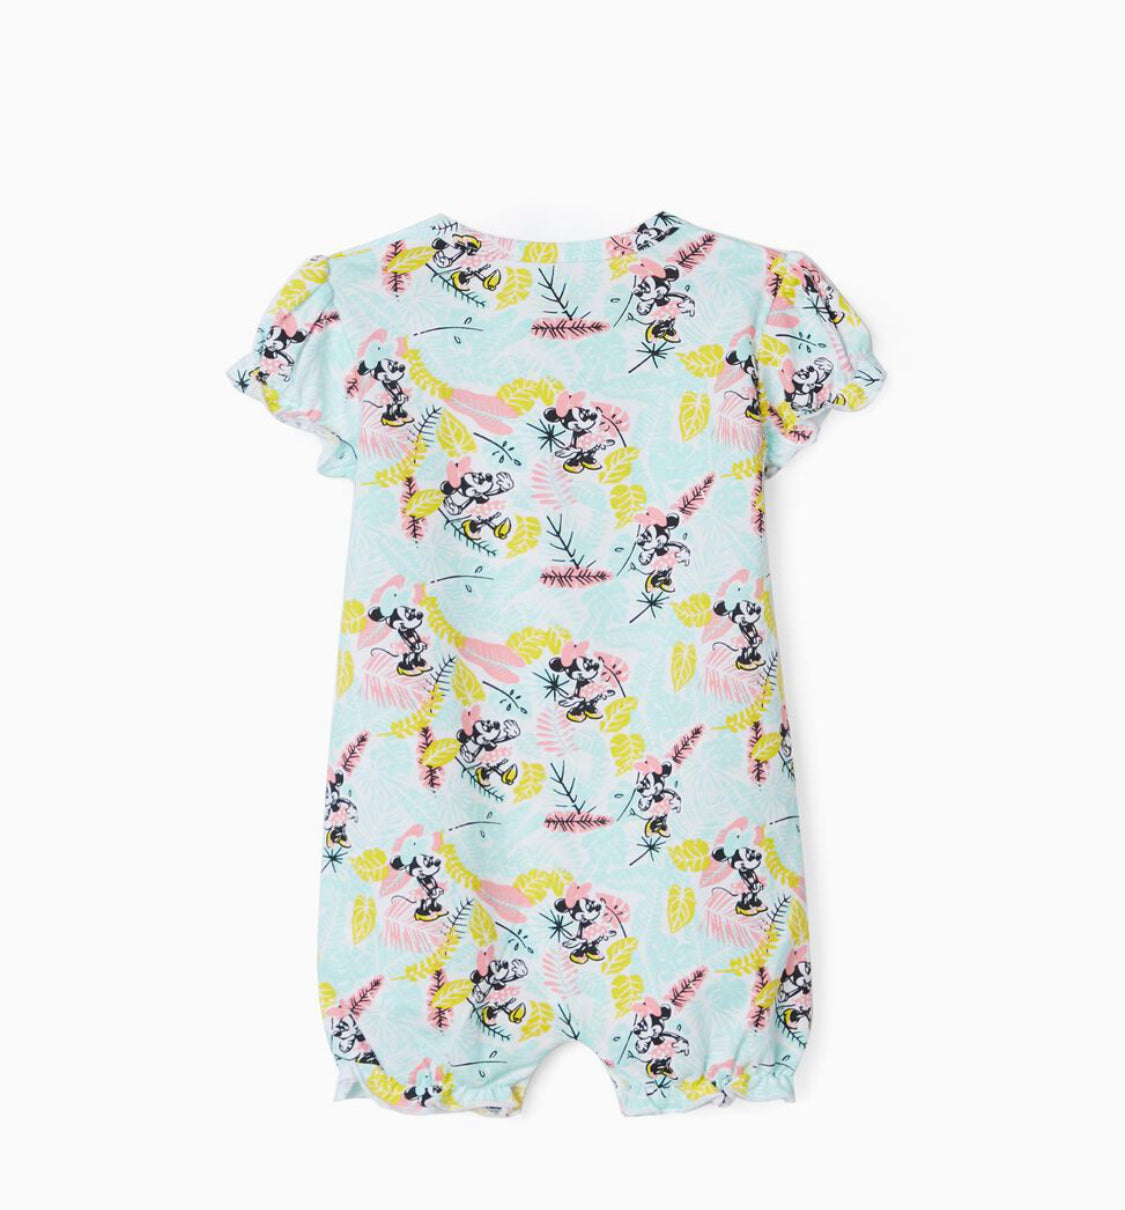 2 Pijamas Romper Para Bebé Niña 'Minnie', Multicolor lolimariscalmoda 19.99